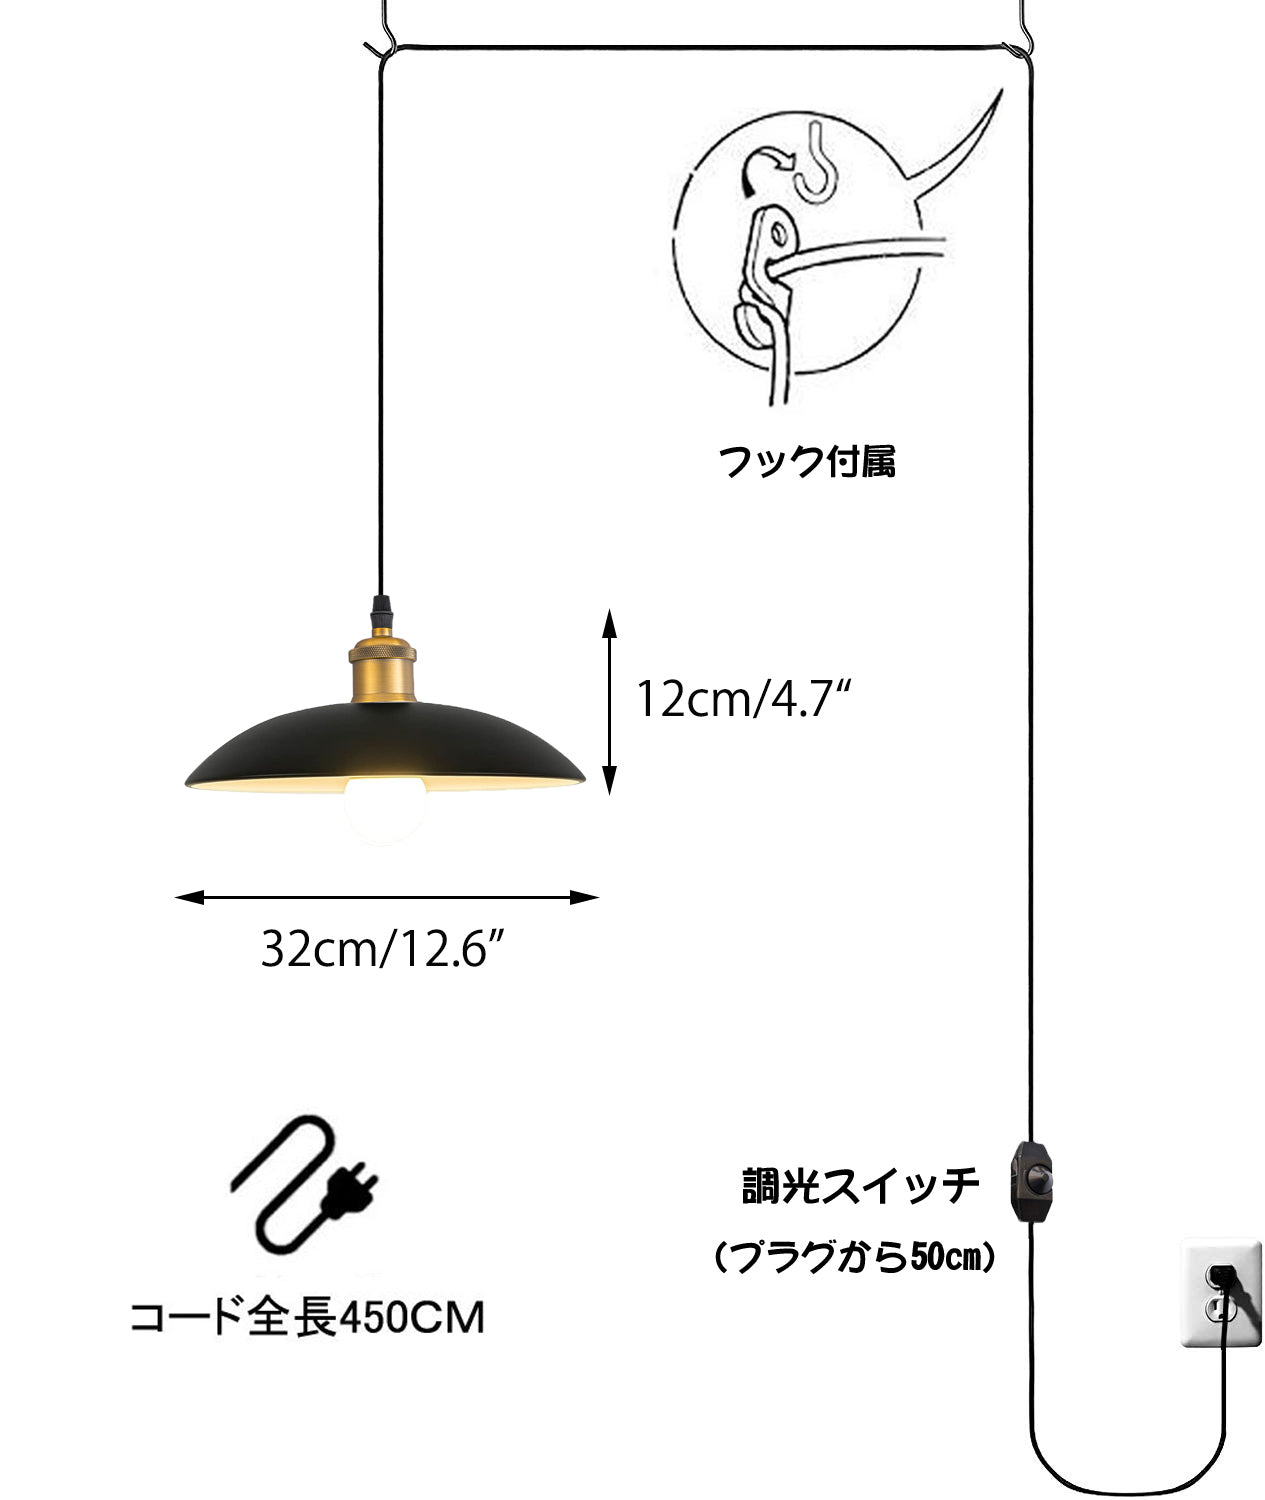 FSLiving コンセント式ペンダントライト   調光対応 レトロペンダント 照明器具 工事不要 賃貸照明 コード長さ4.5m